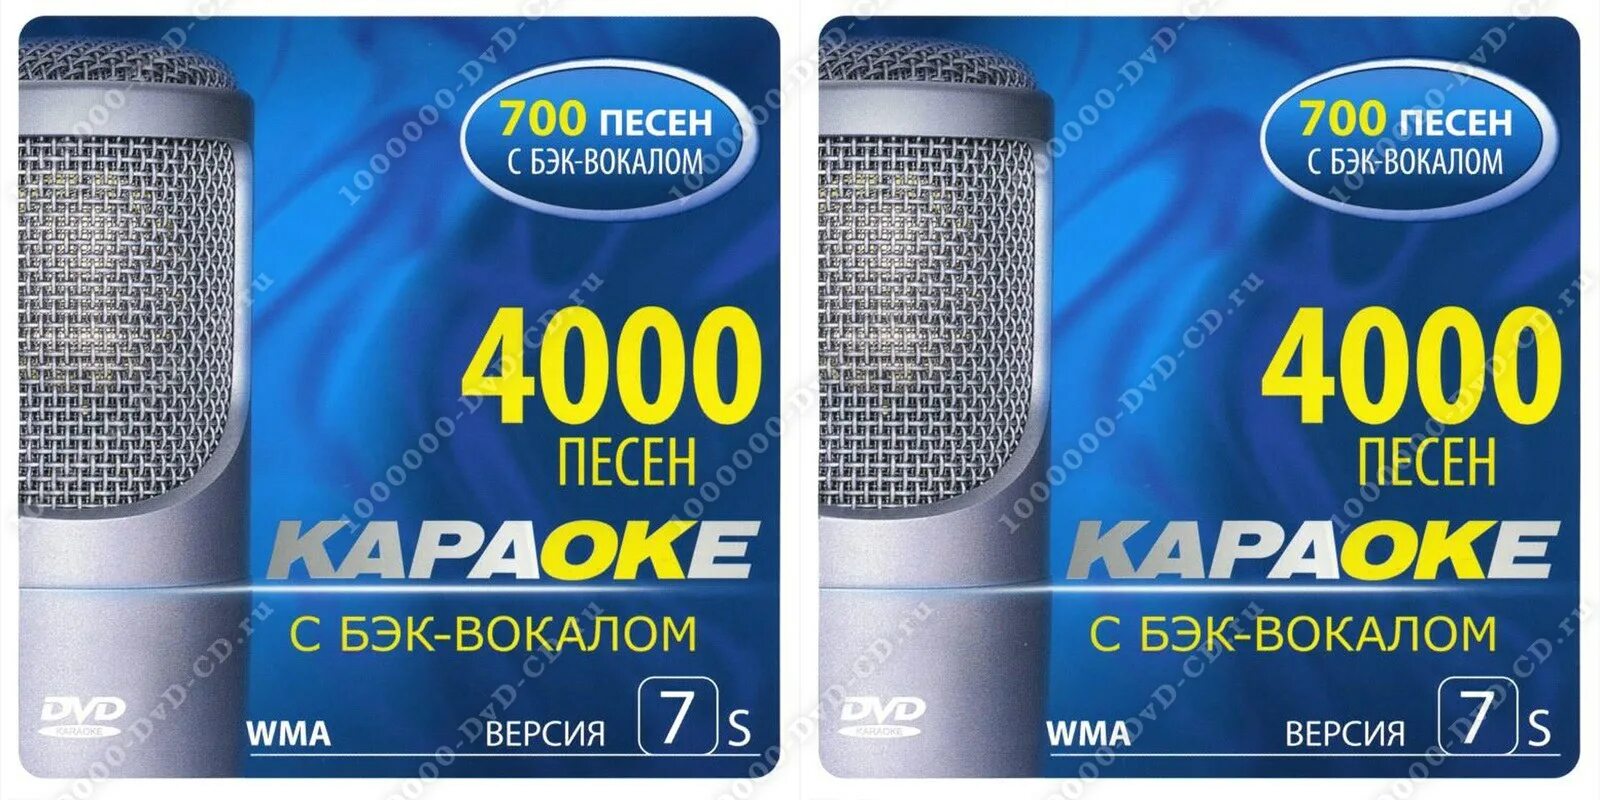 Встанем с бэк вокалом. Диск караоке Samsung ver 6. DVD диск караоке Samsung (ver. 5.2) DVD. Караоке 4000 песен DVD CD. Караоке с бэк-вокалом 4000.